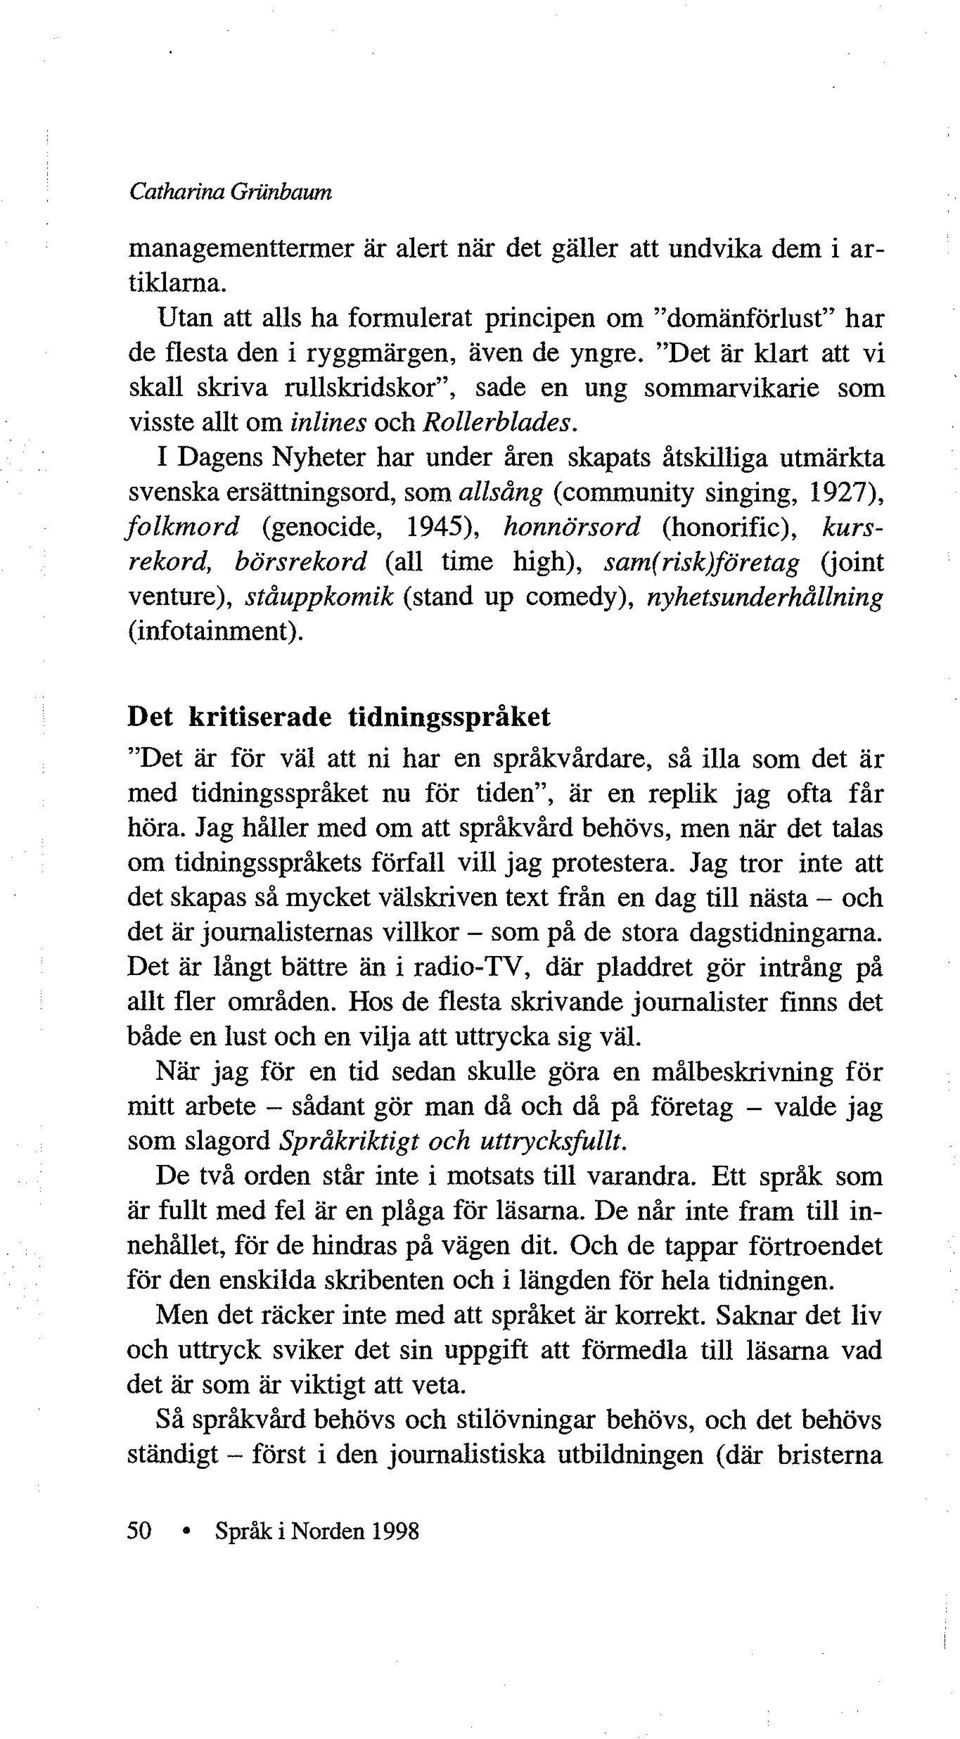 I Dagens Nyheter har under åren skapats åtskilliga utmärkta svenska ersättningsord, som allsång (community singing, 1927), folkmord (genocide, 1945), honnörsord (honorific), kursrekord, börsrekord